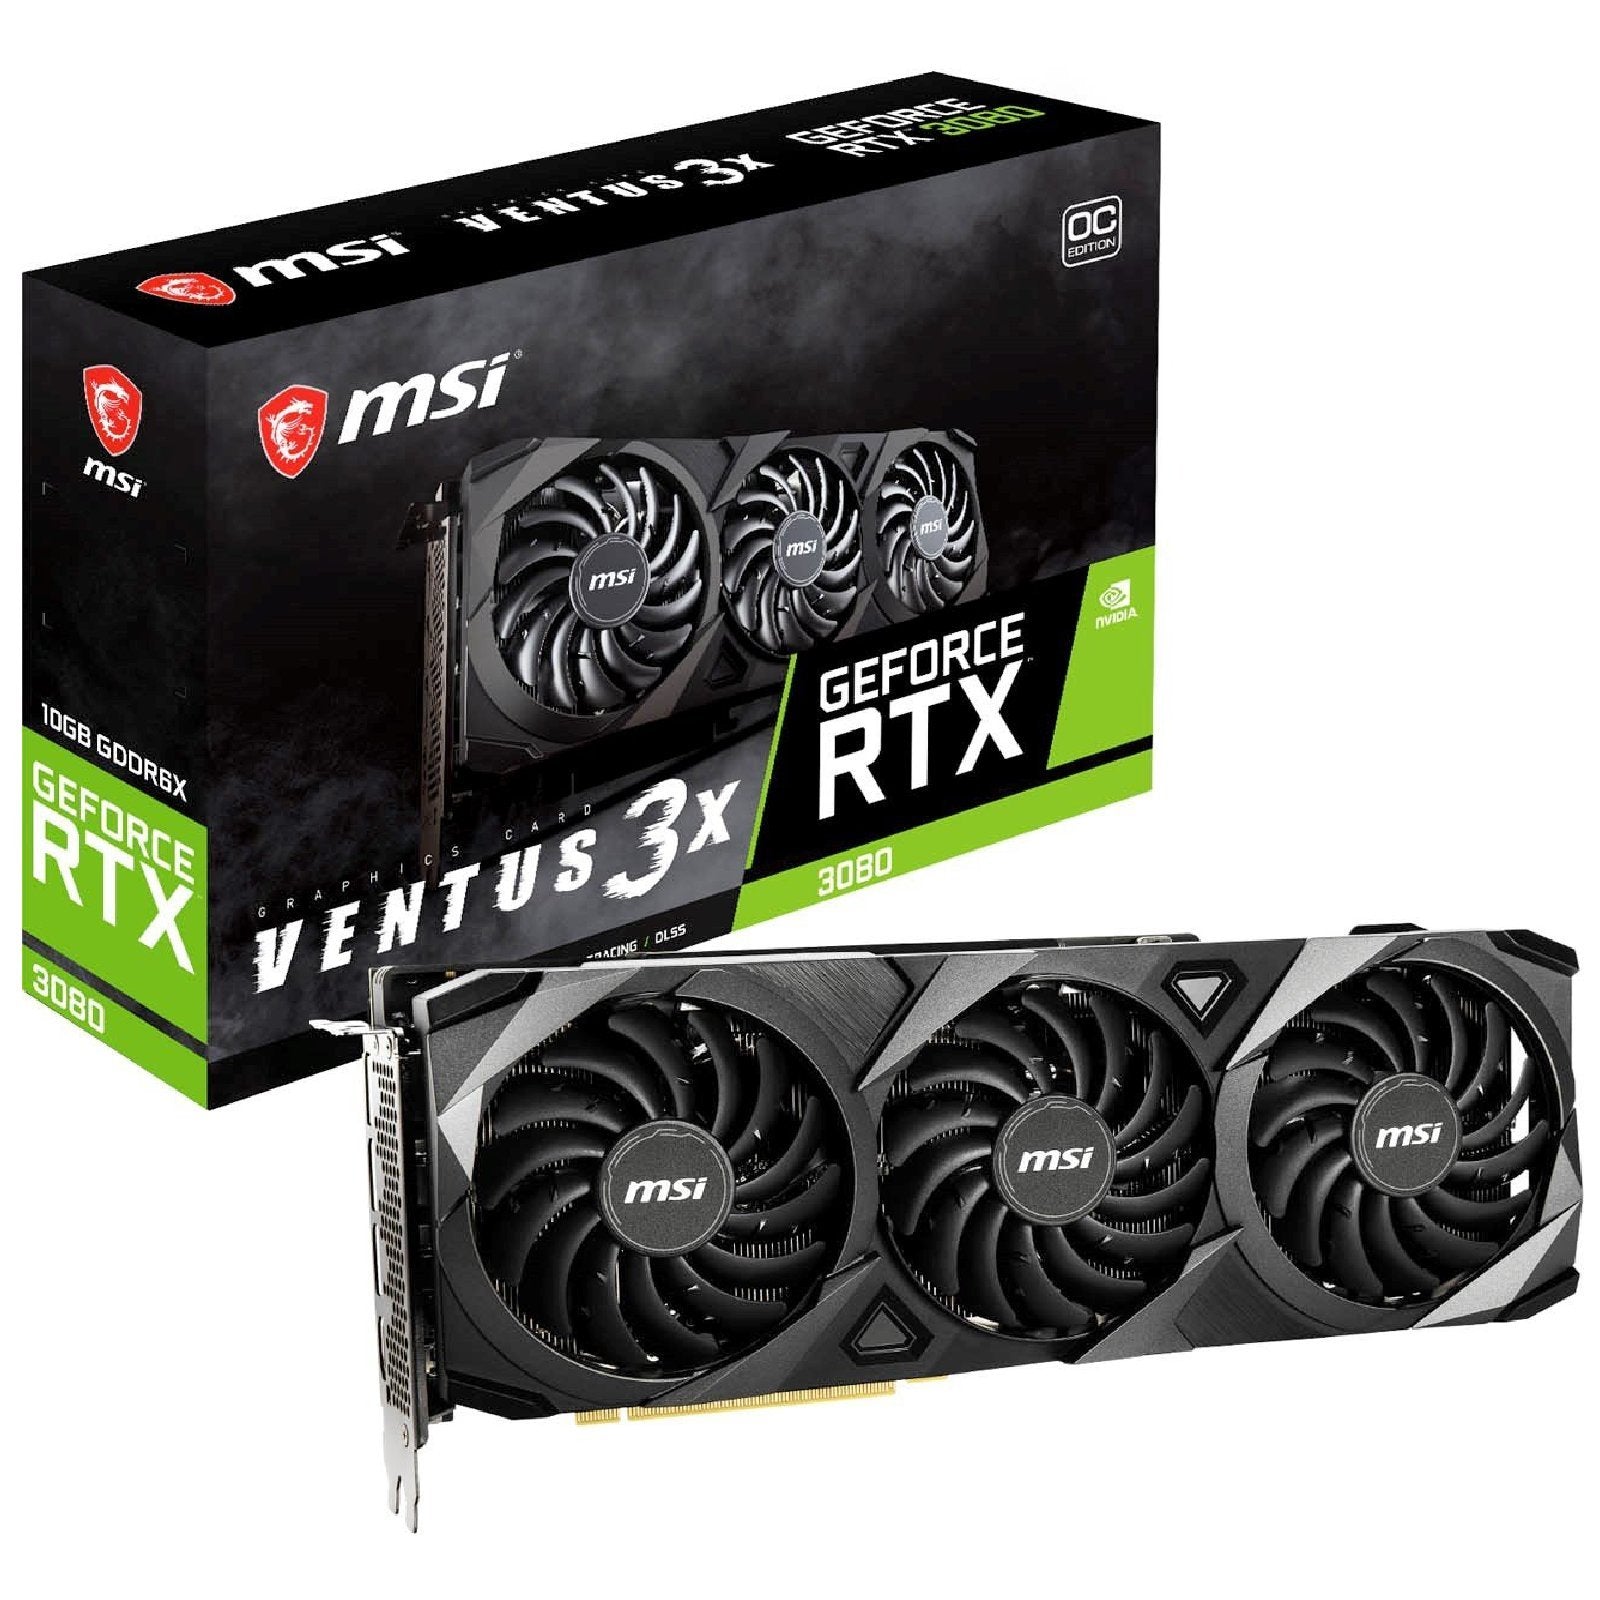 MSI GeForce RTX 3080 Ventus 3X LHR 10GB GDDR6X OC GPU - Store 974 | ستور ٩٧٤